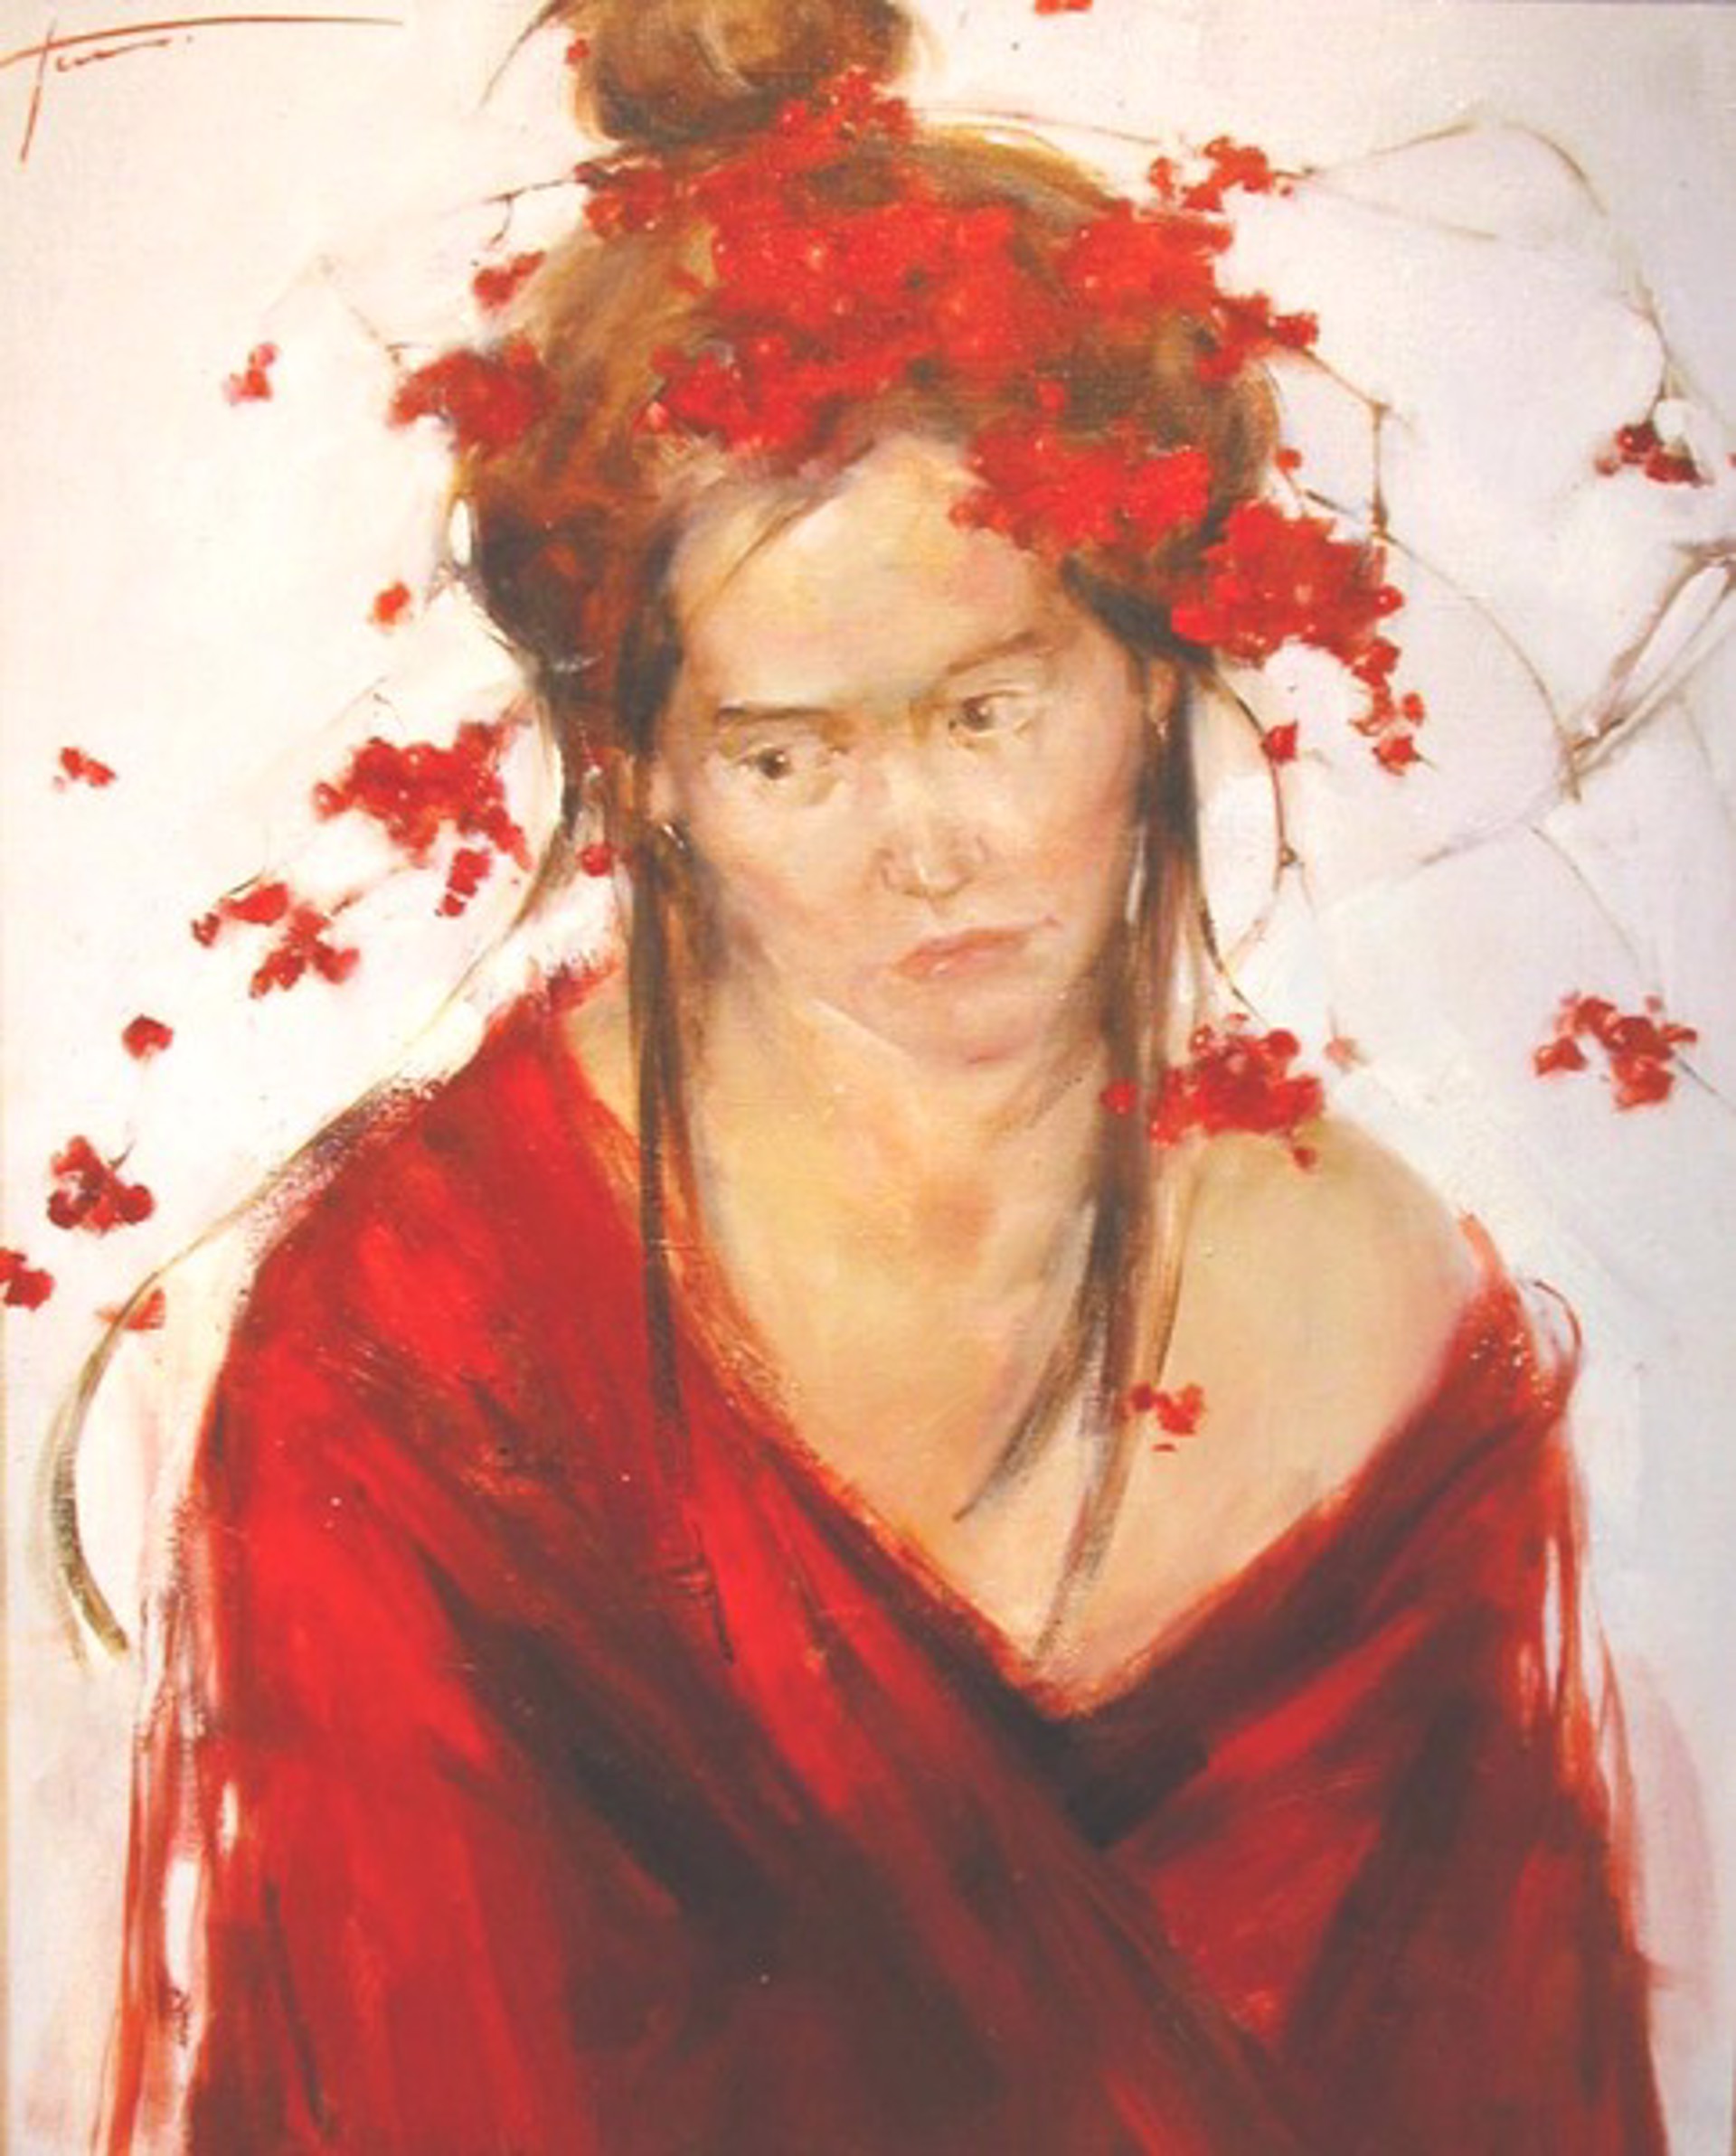 Natasha in Red by Yana Golubyatnikova